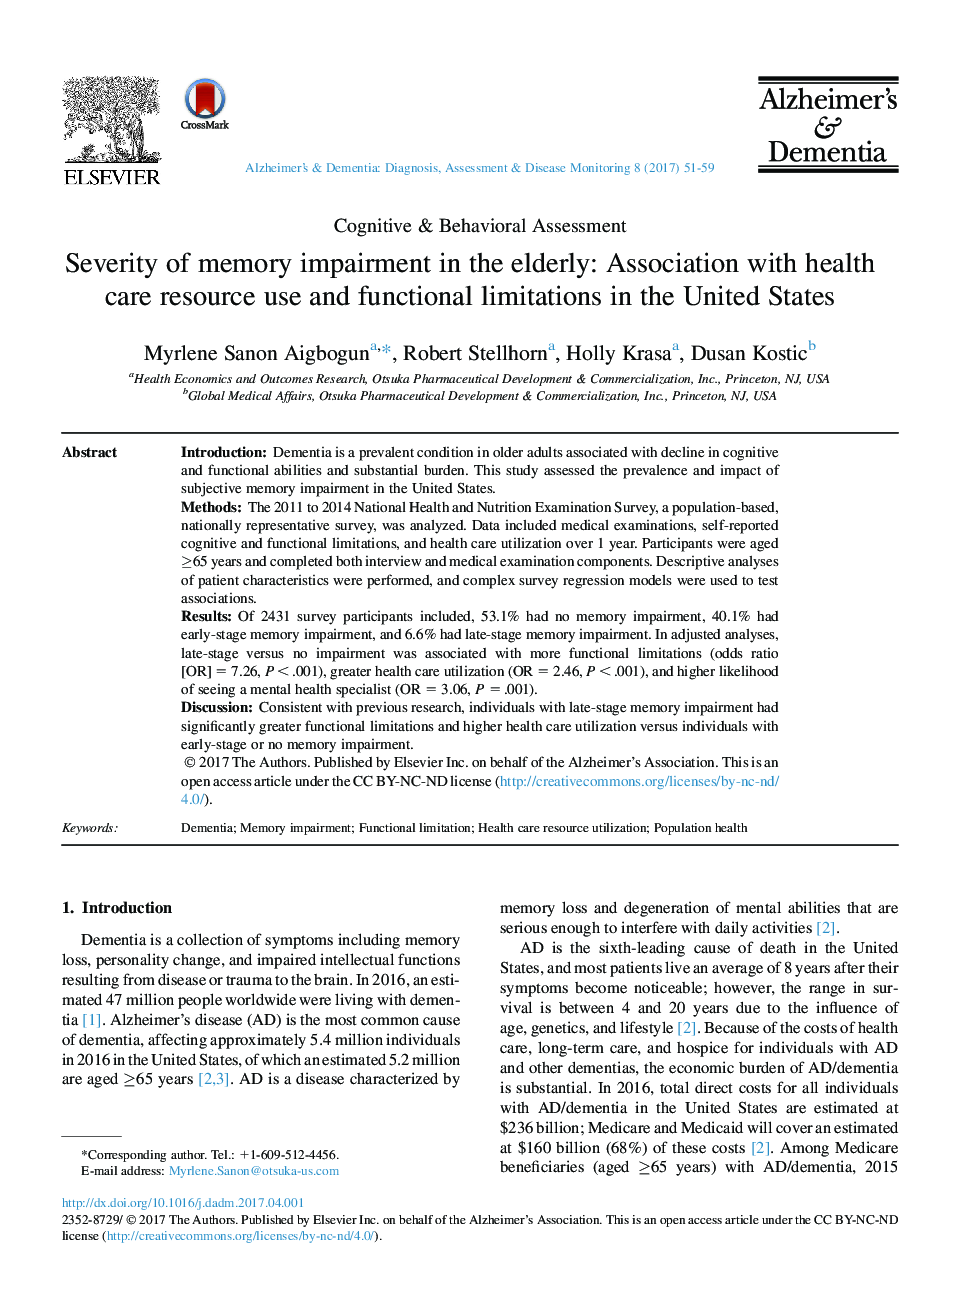 شدت اختلال حافظه در سالمندان: ارتباط با استفاده از منابع مراقبت بهداشتی و محدودیت های عملکردی در ایالات متحده 